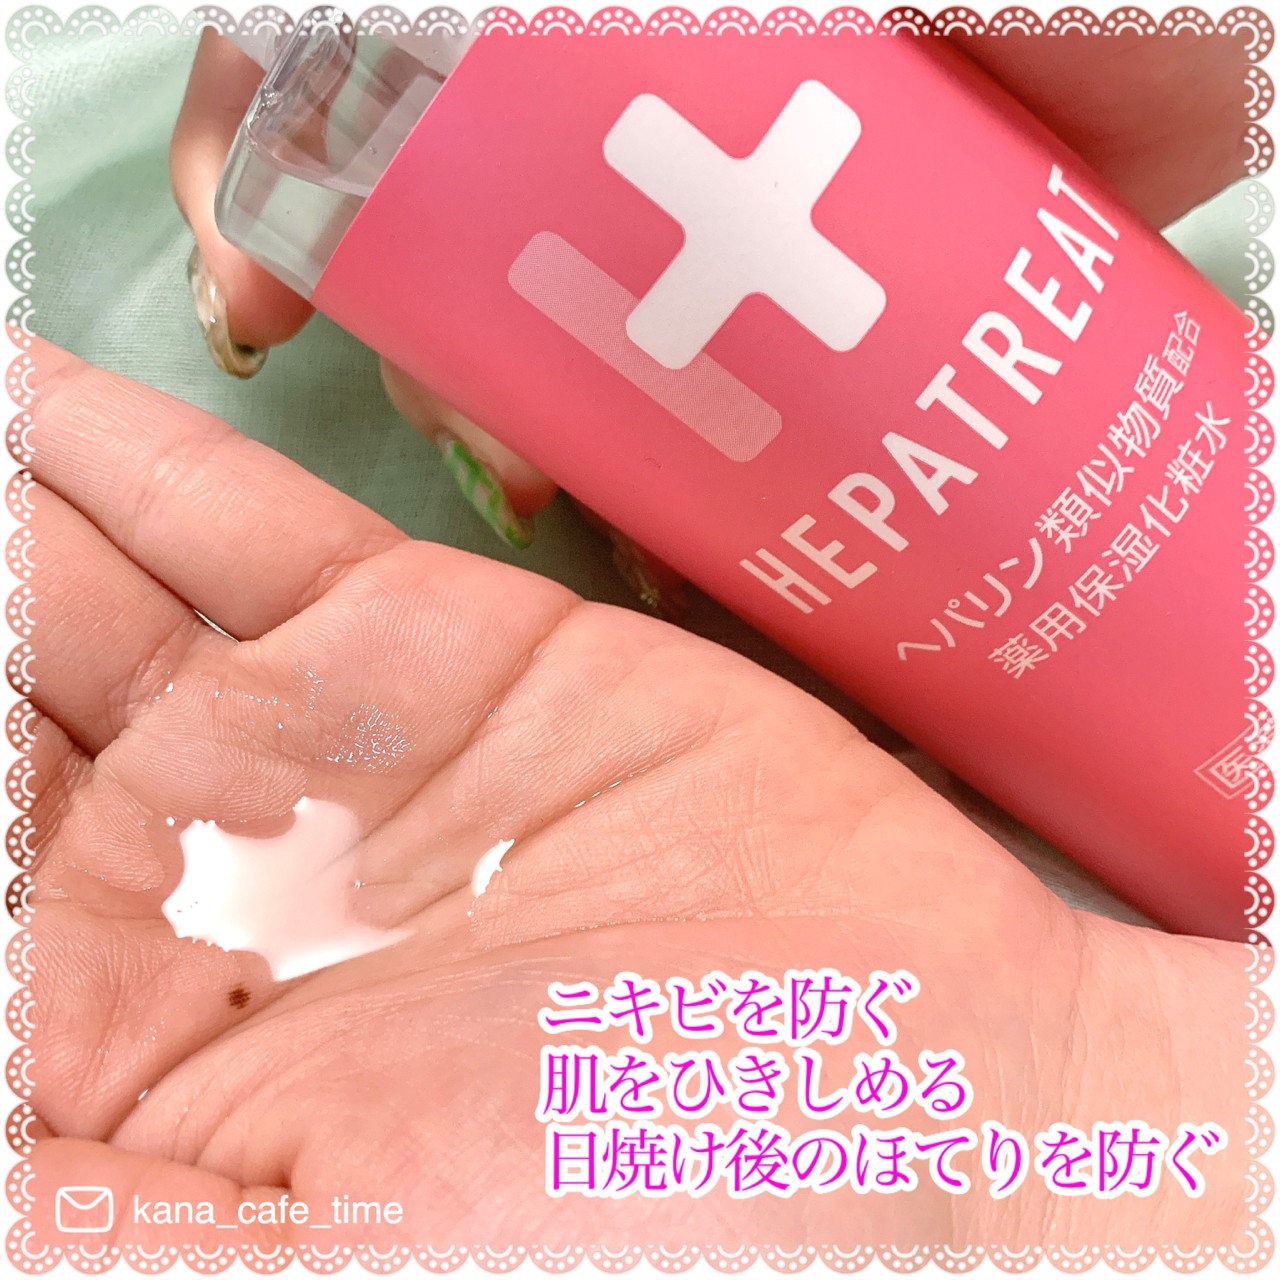 ヘパトリート 薬用保湿化粧水を使ったkana_cafe_timeさんのクチコミ画像4